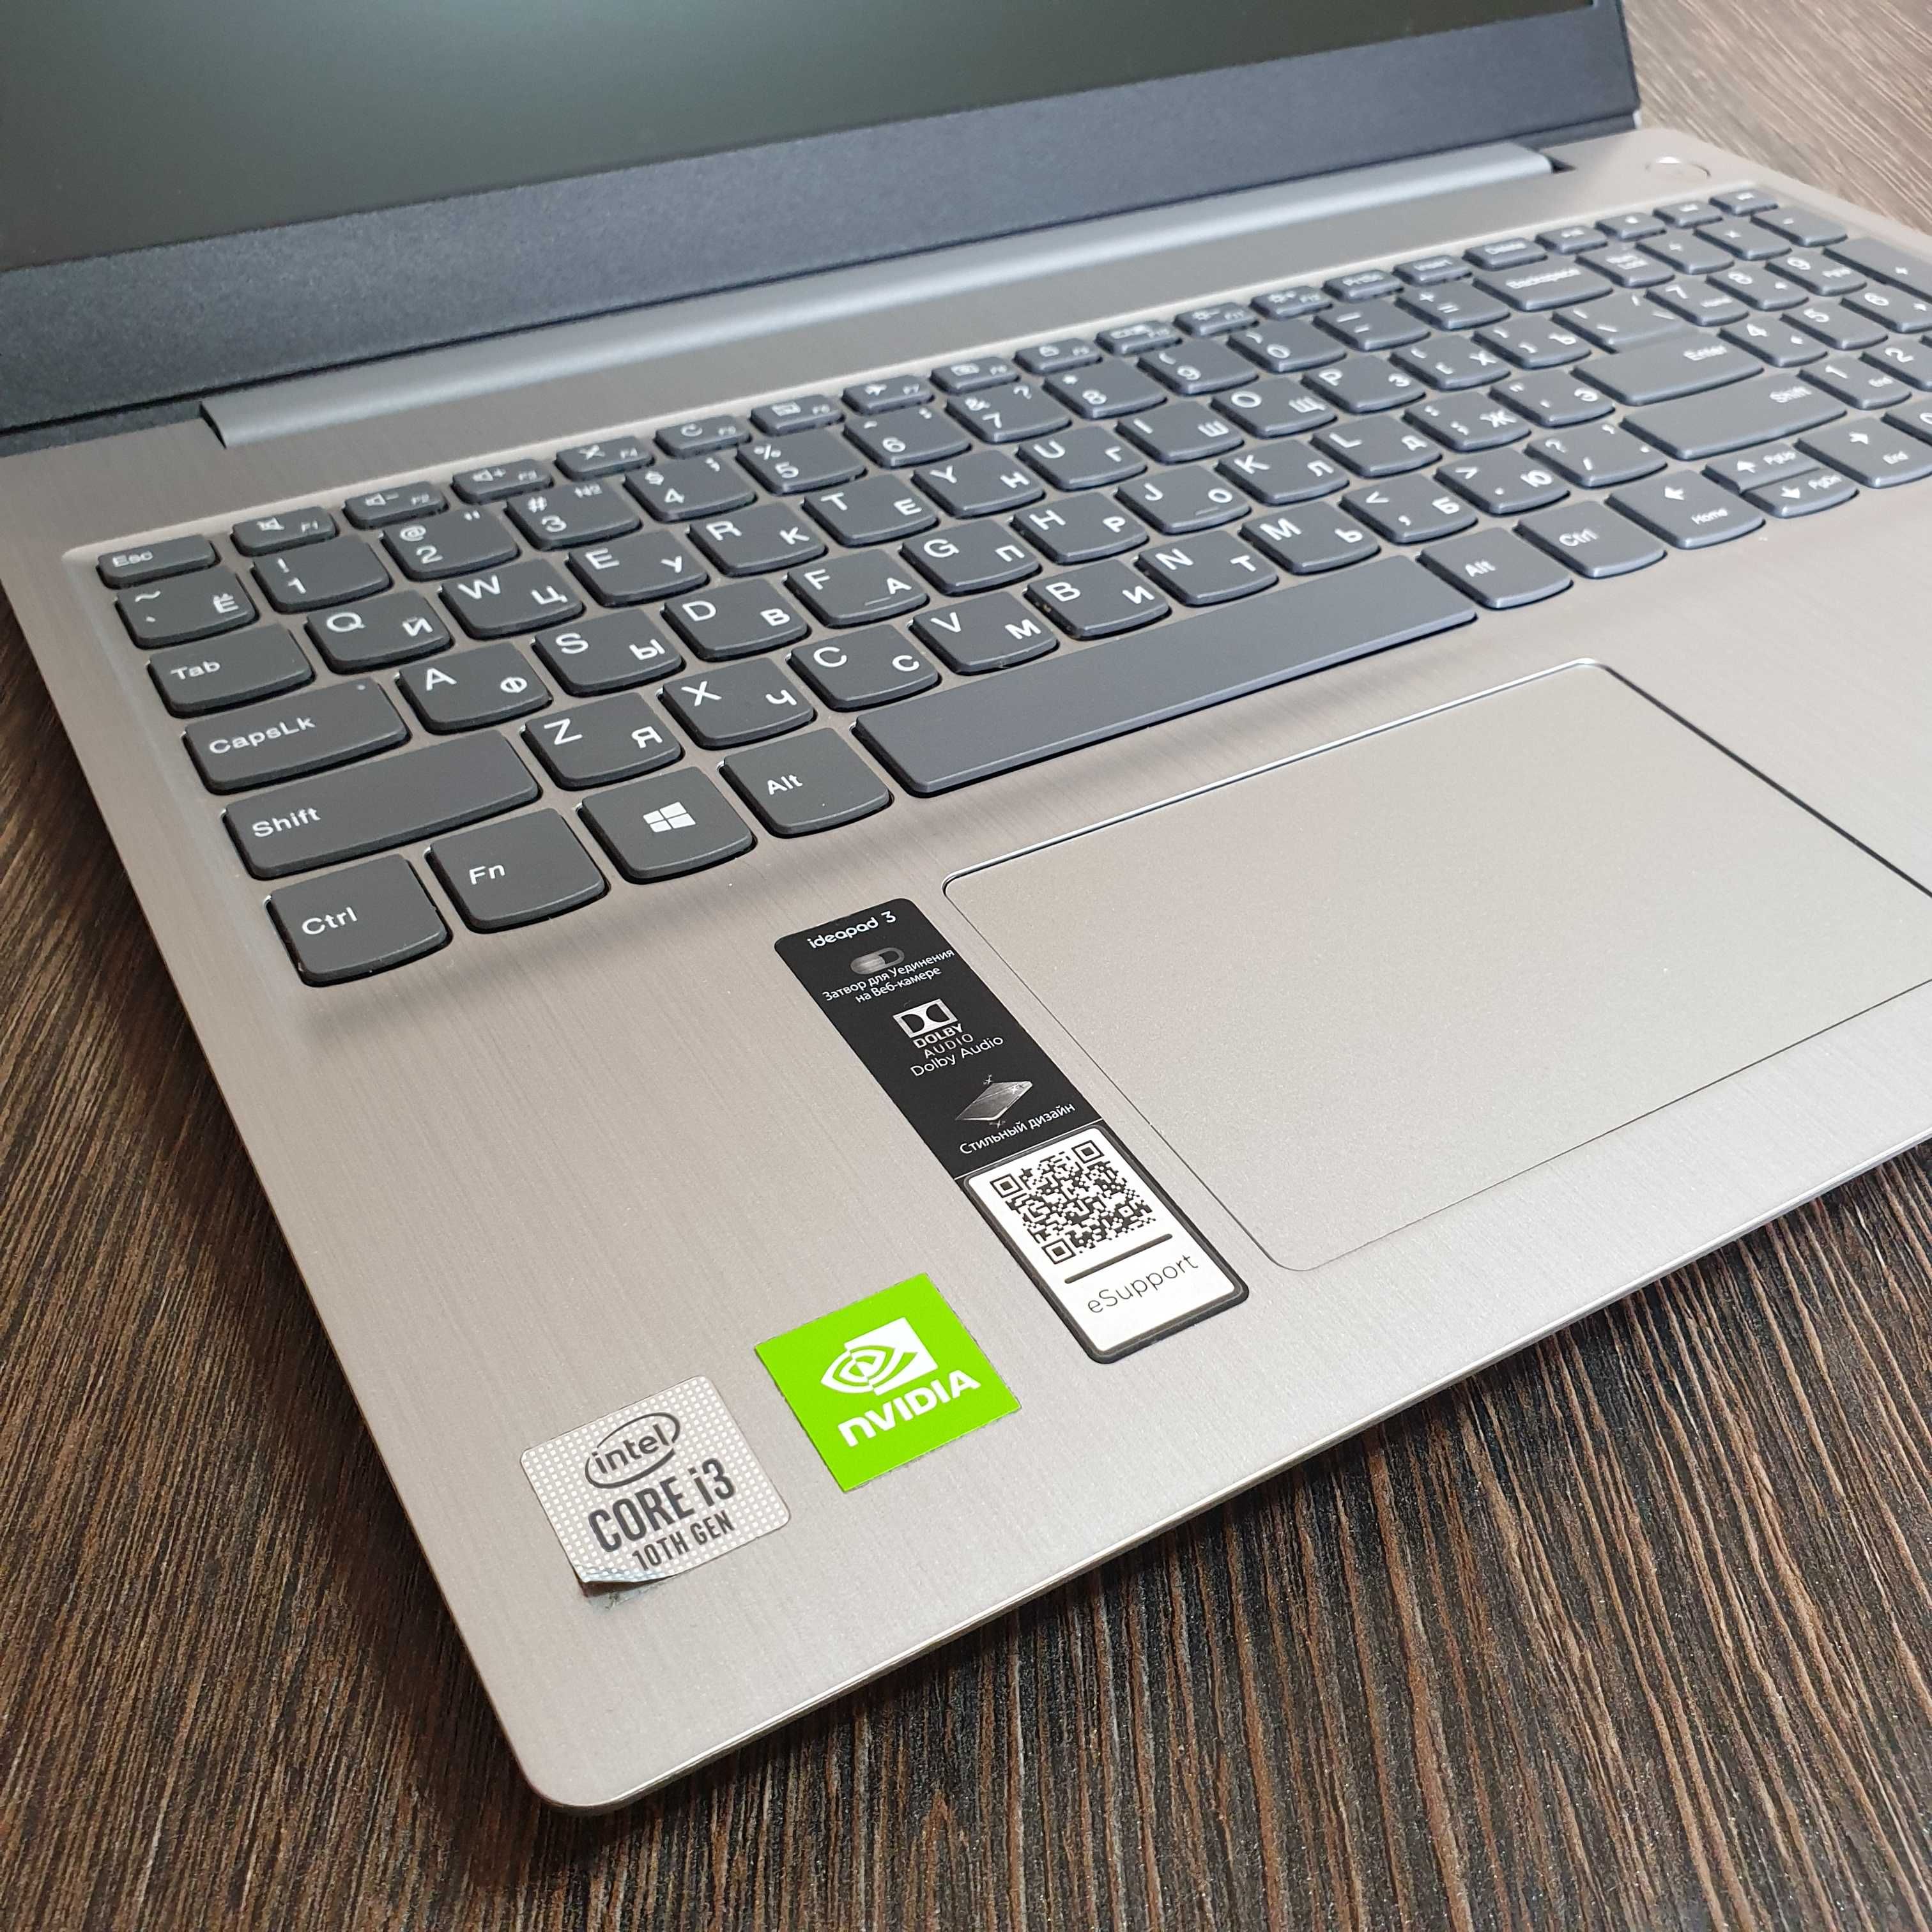 мощный i3 ноутбук Lenovo IdeaPad 3, для графических и офисных